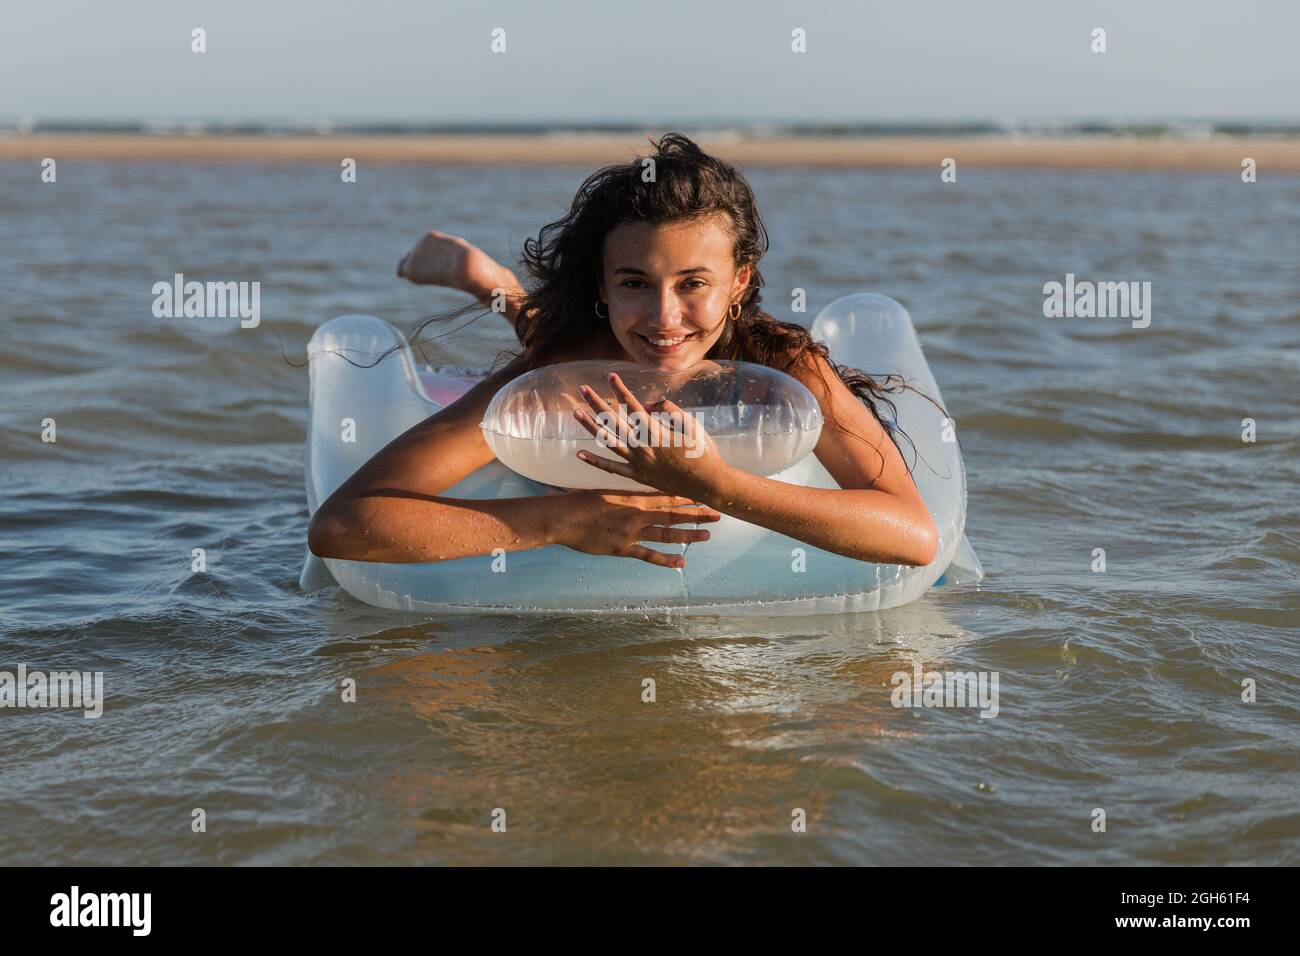 Contenu femelle couché sur un matelas gonflable flottant sur l'eau de mer le jour ensoleillé en été et regardant la caméra Banque D'Images